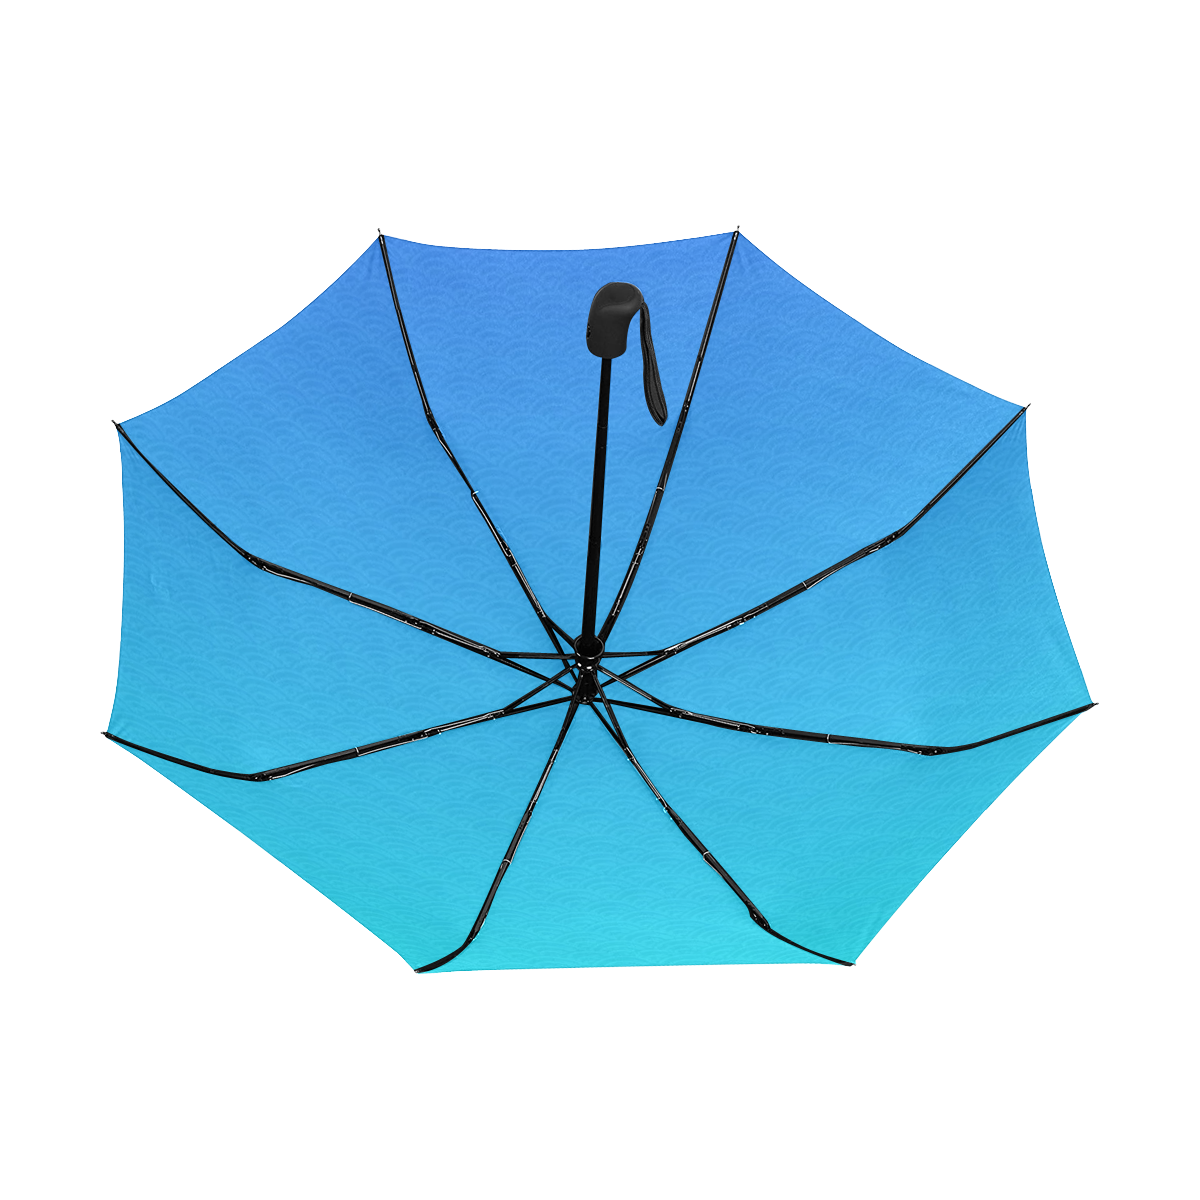 Japanese Blue Waves Anti-UV Auto-Foldable Umbrella (Underside Printing) (U06)